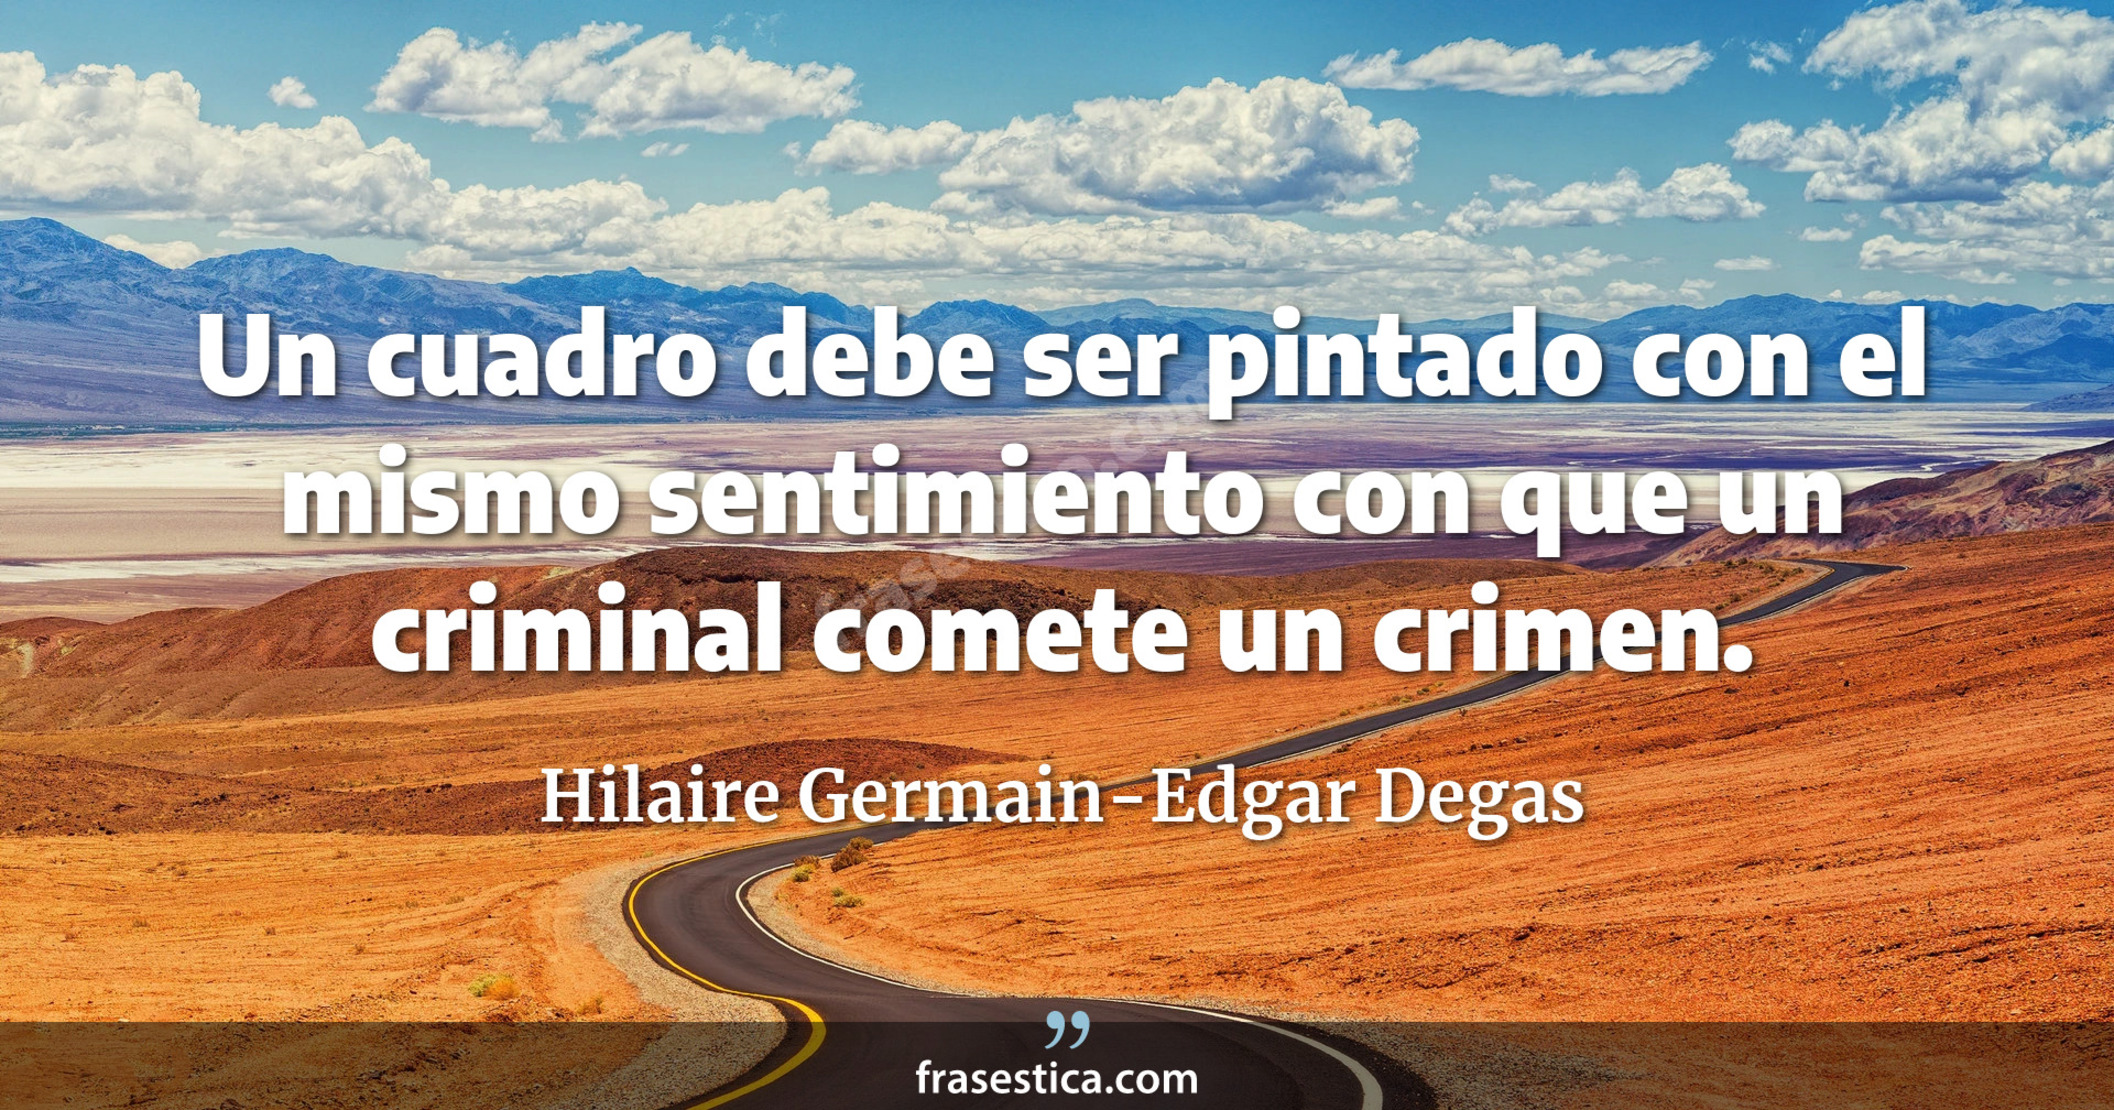 Un cuadro debe ser pintado con el mismo sentimiento con que un criminal comete un crimen. - Hilaire Germain-Edgar Degas